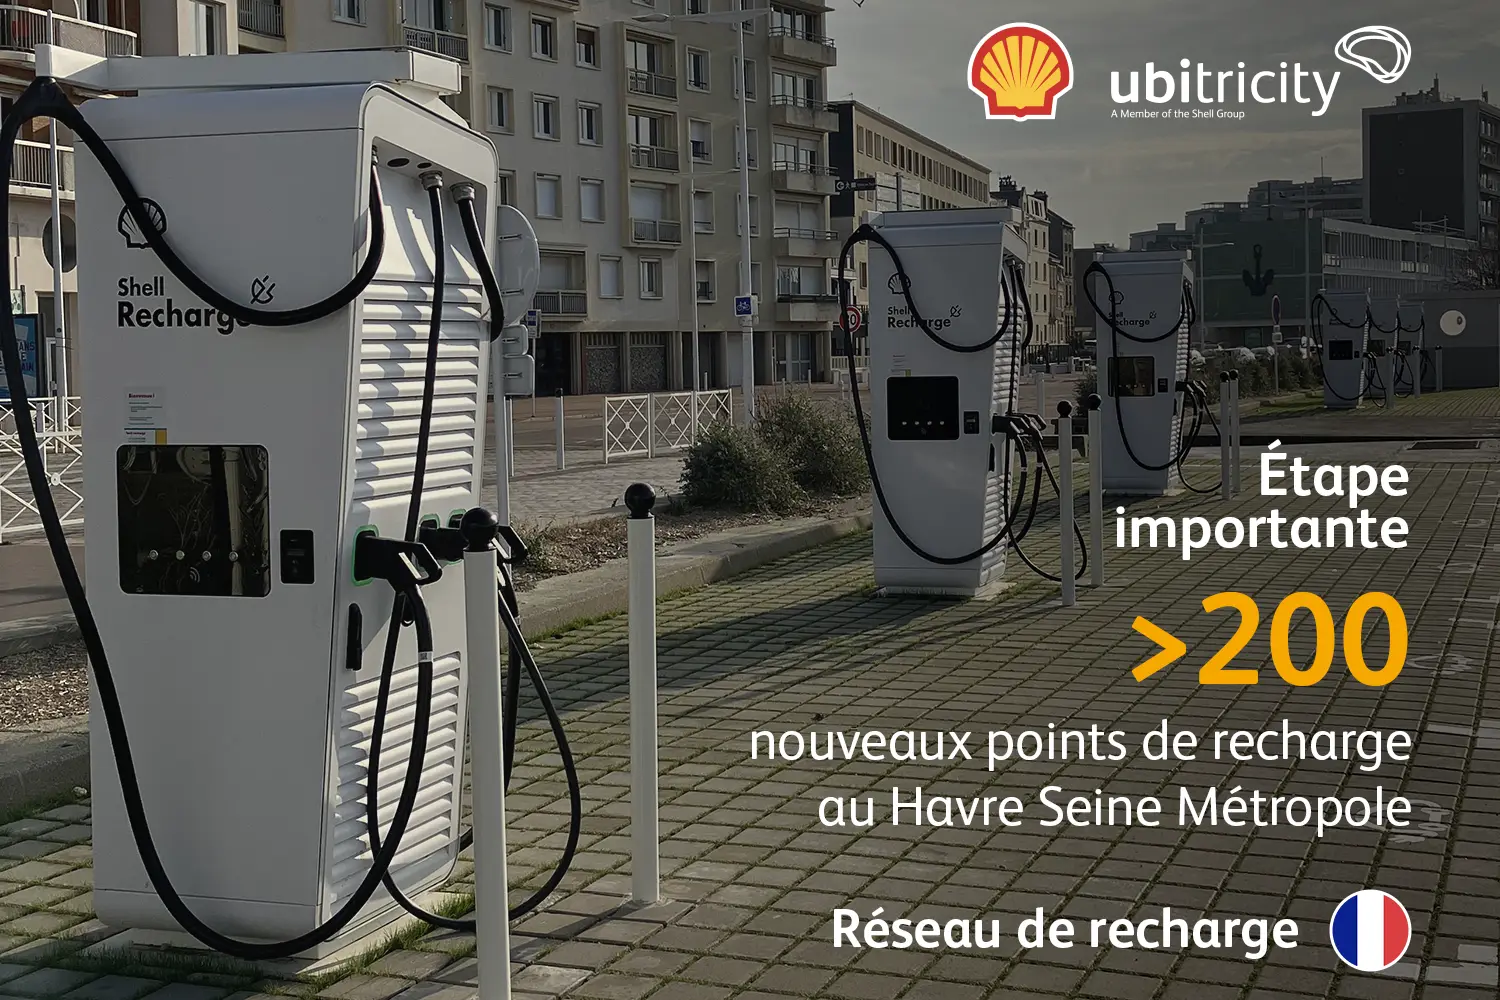 Shell ubitricity atteint une étape importante avec plus de 200 points de recharge publiques déployés sur Le Havre Seine Métropole